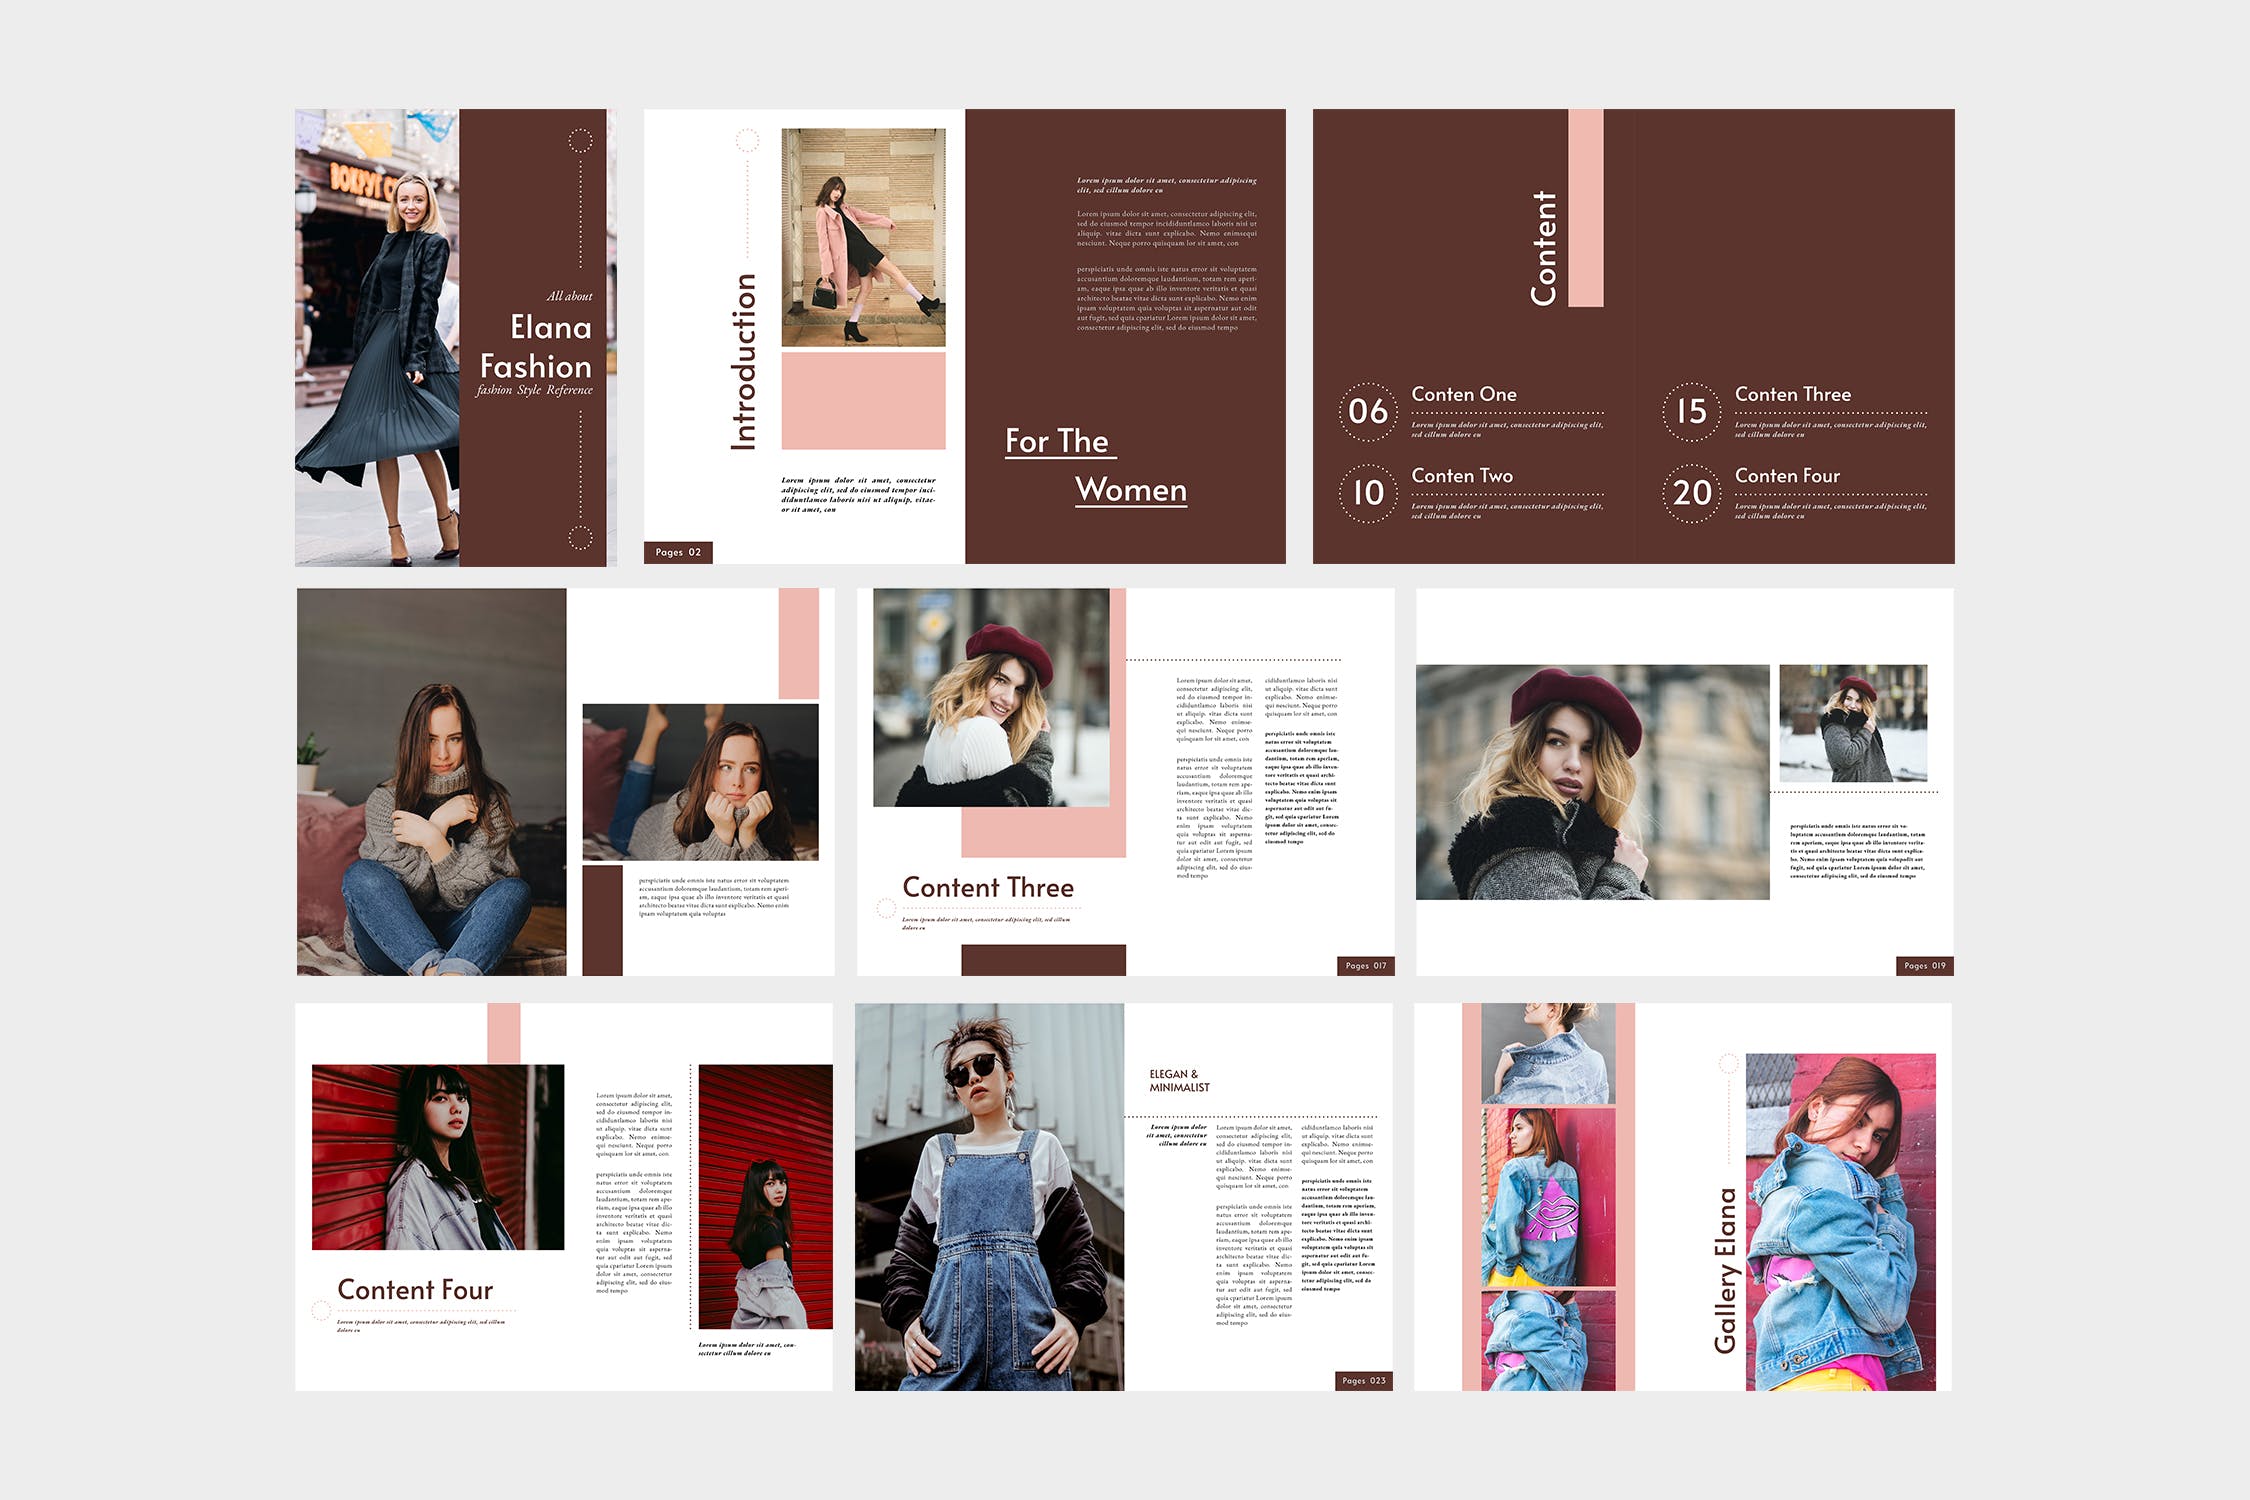 时装产品第一素材精选目录设计模板 Elana Fashion Lookbook Catalogue插图(4)